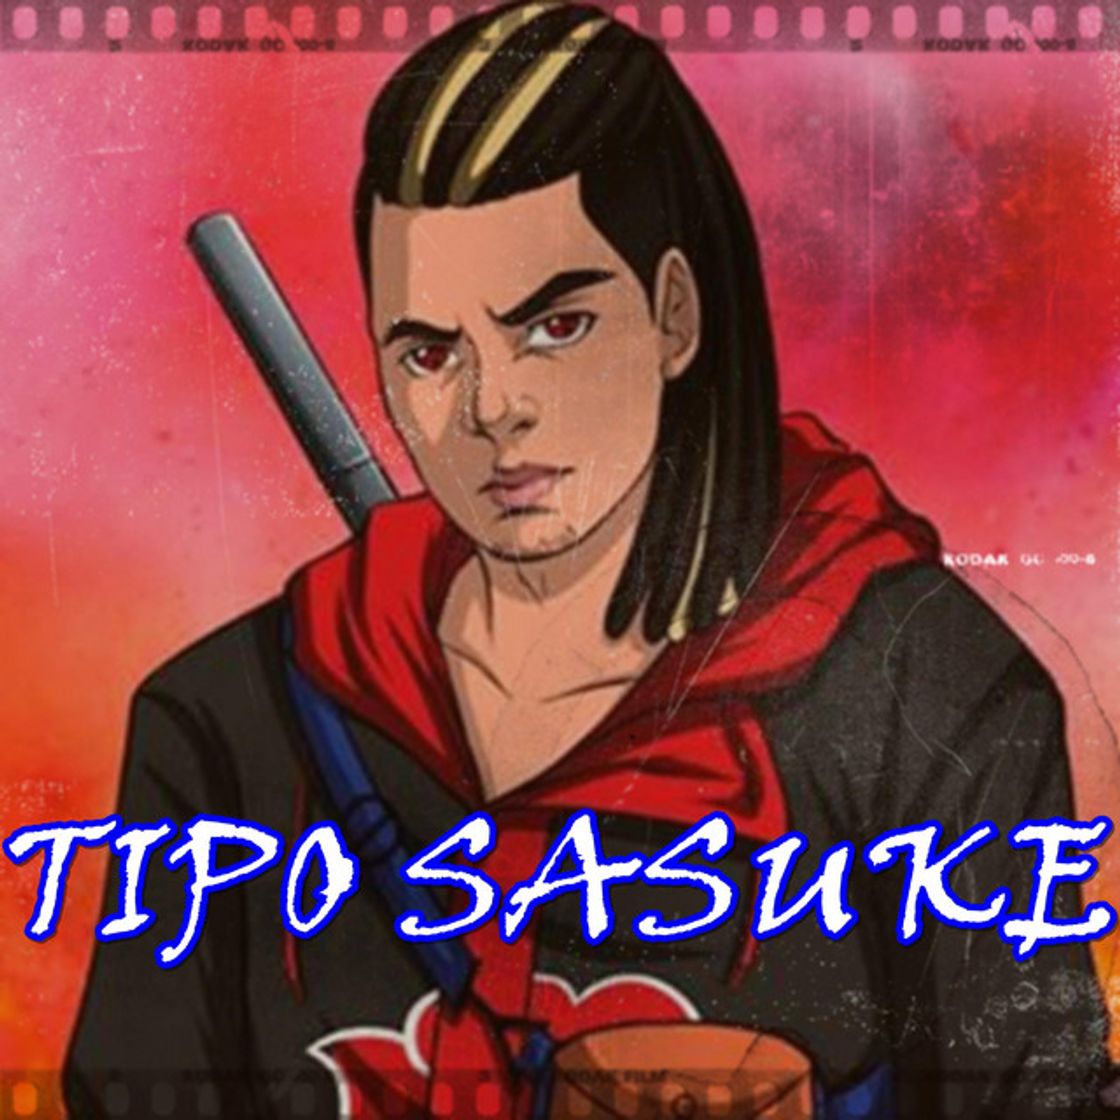 Tipo Sasuke